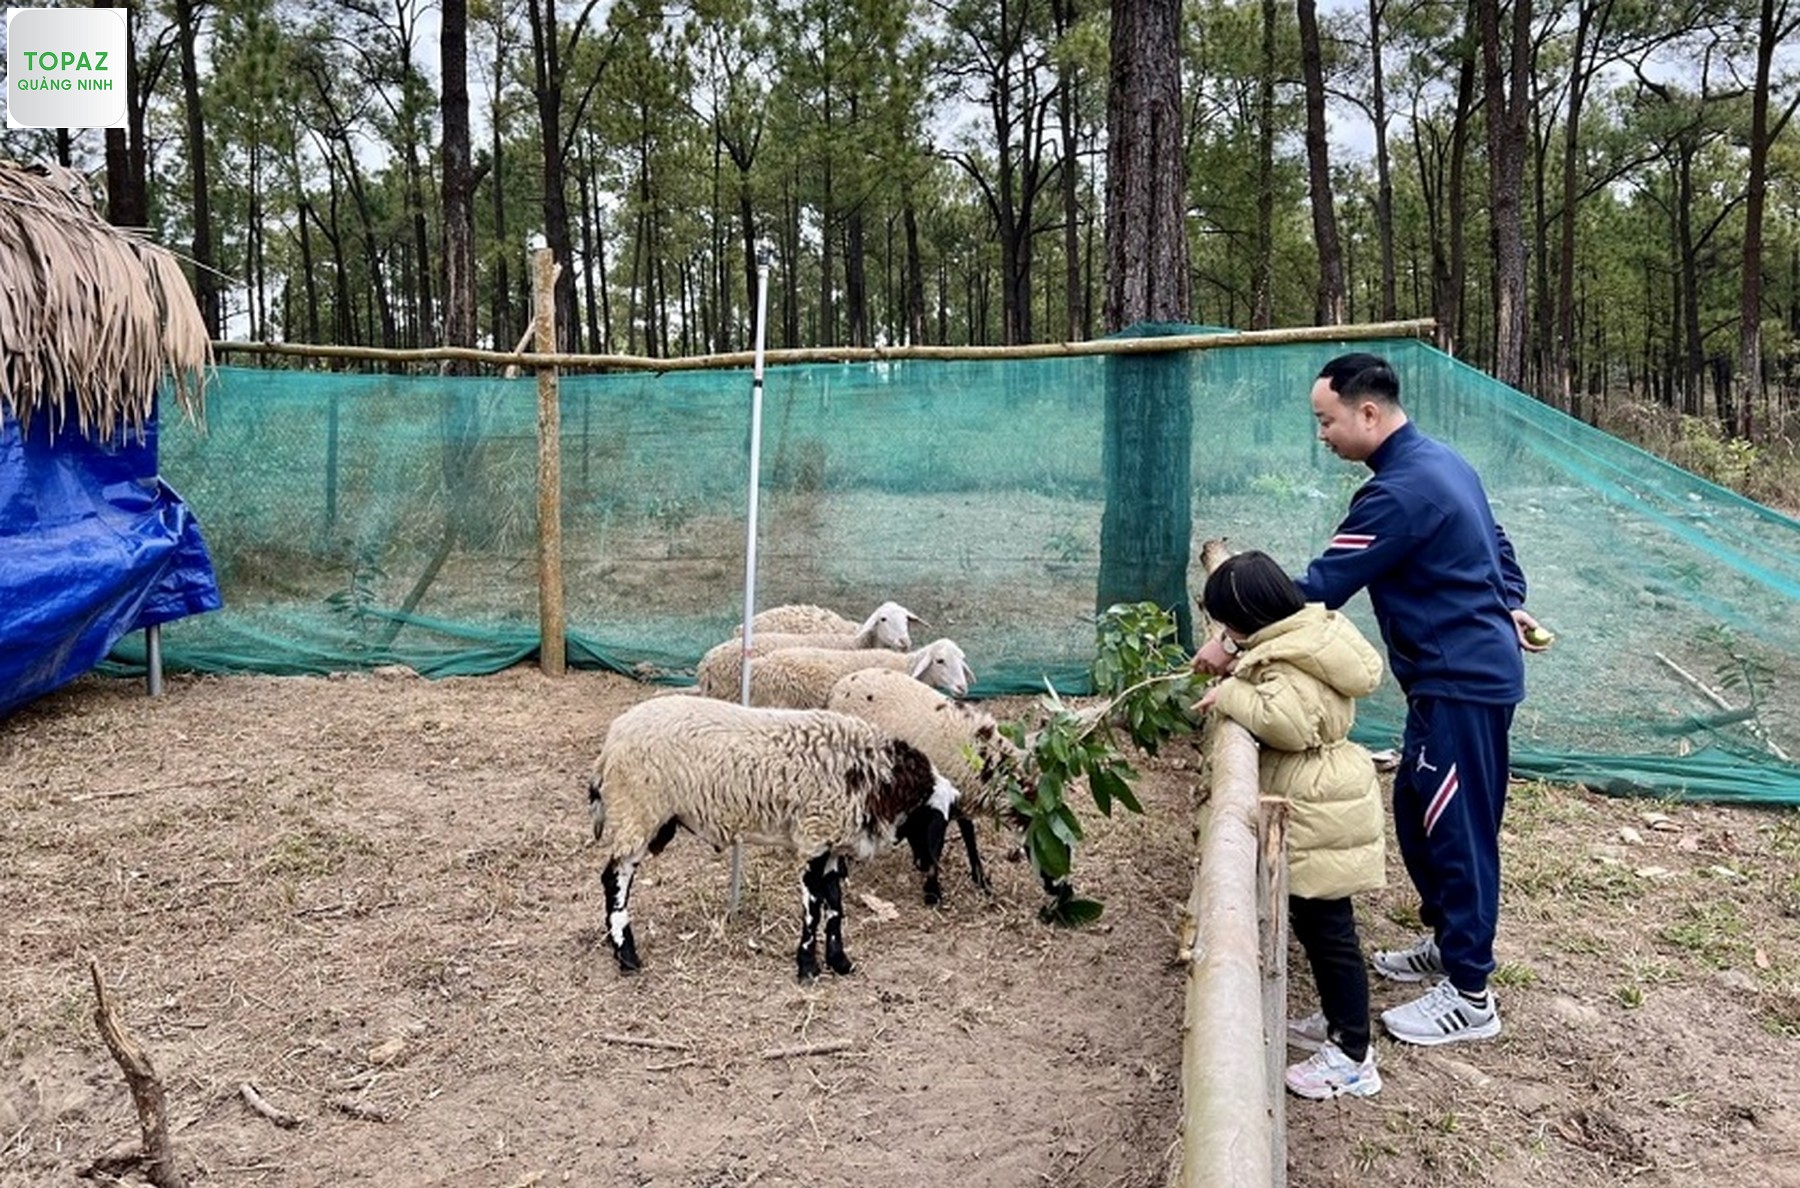 Tham quan khu nuôi cừu là một hoạt động du khách không nên bỏ qua